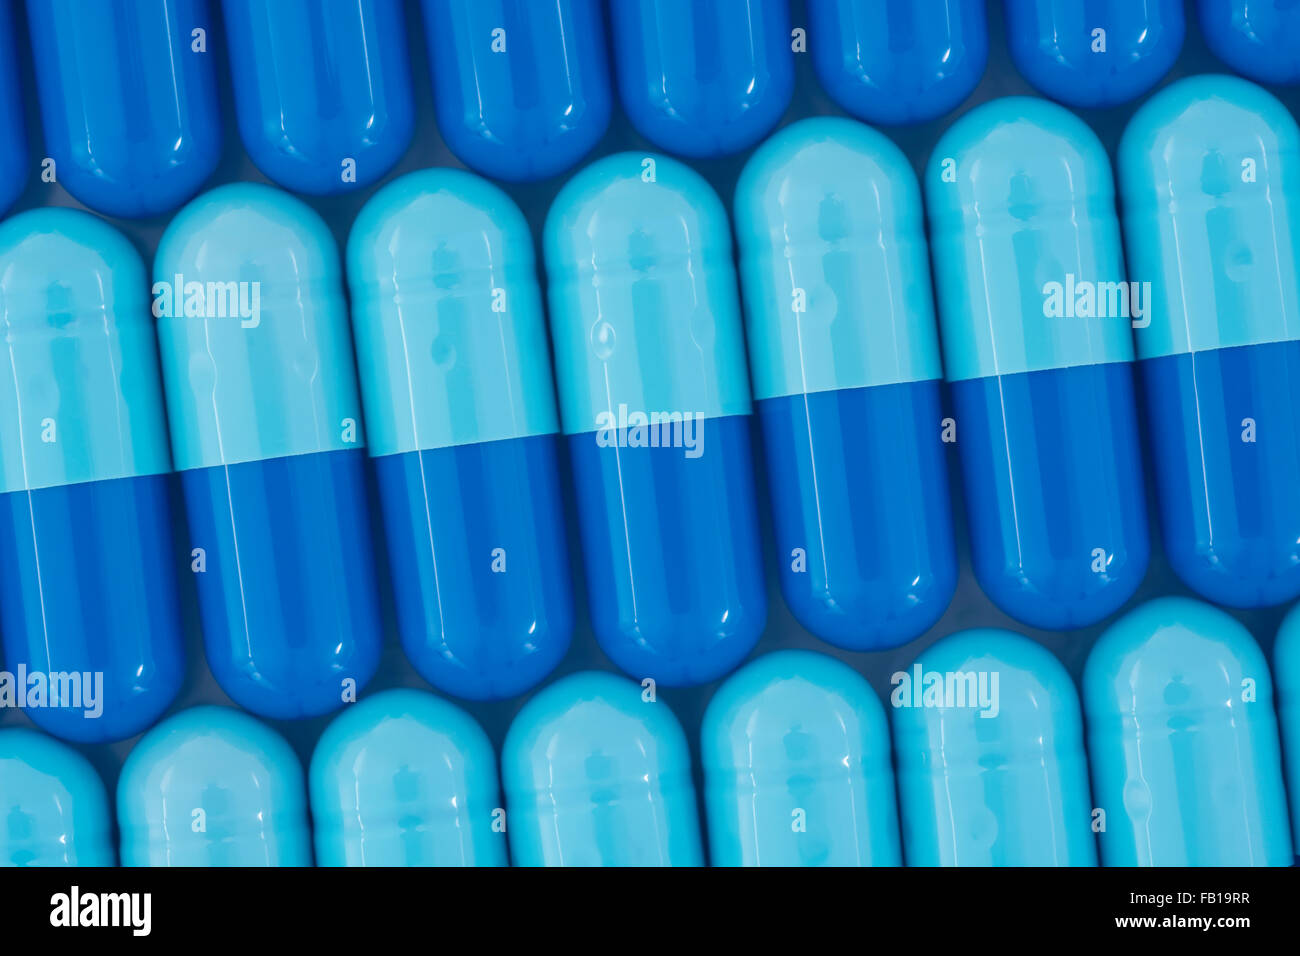 Primer plano de pastillas - forma de cápsula hecha de gelatina. Pastillas azules - posible metáfora para NHS / Servicio Nacional de Salud. Asumir a las compañías farmacéuticas de EE.UU. Foto de stock